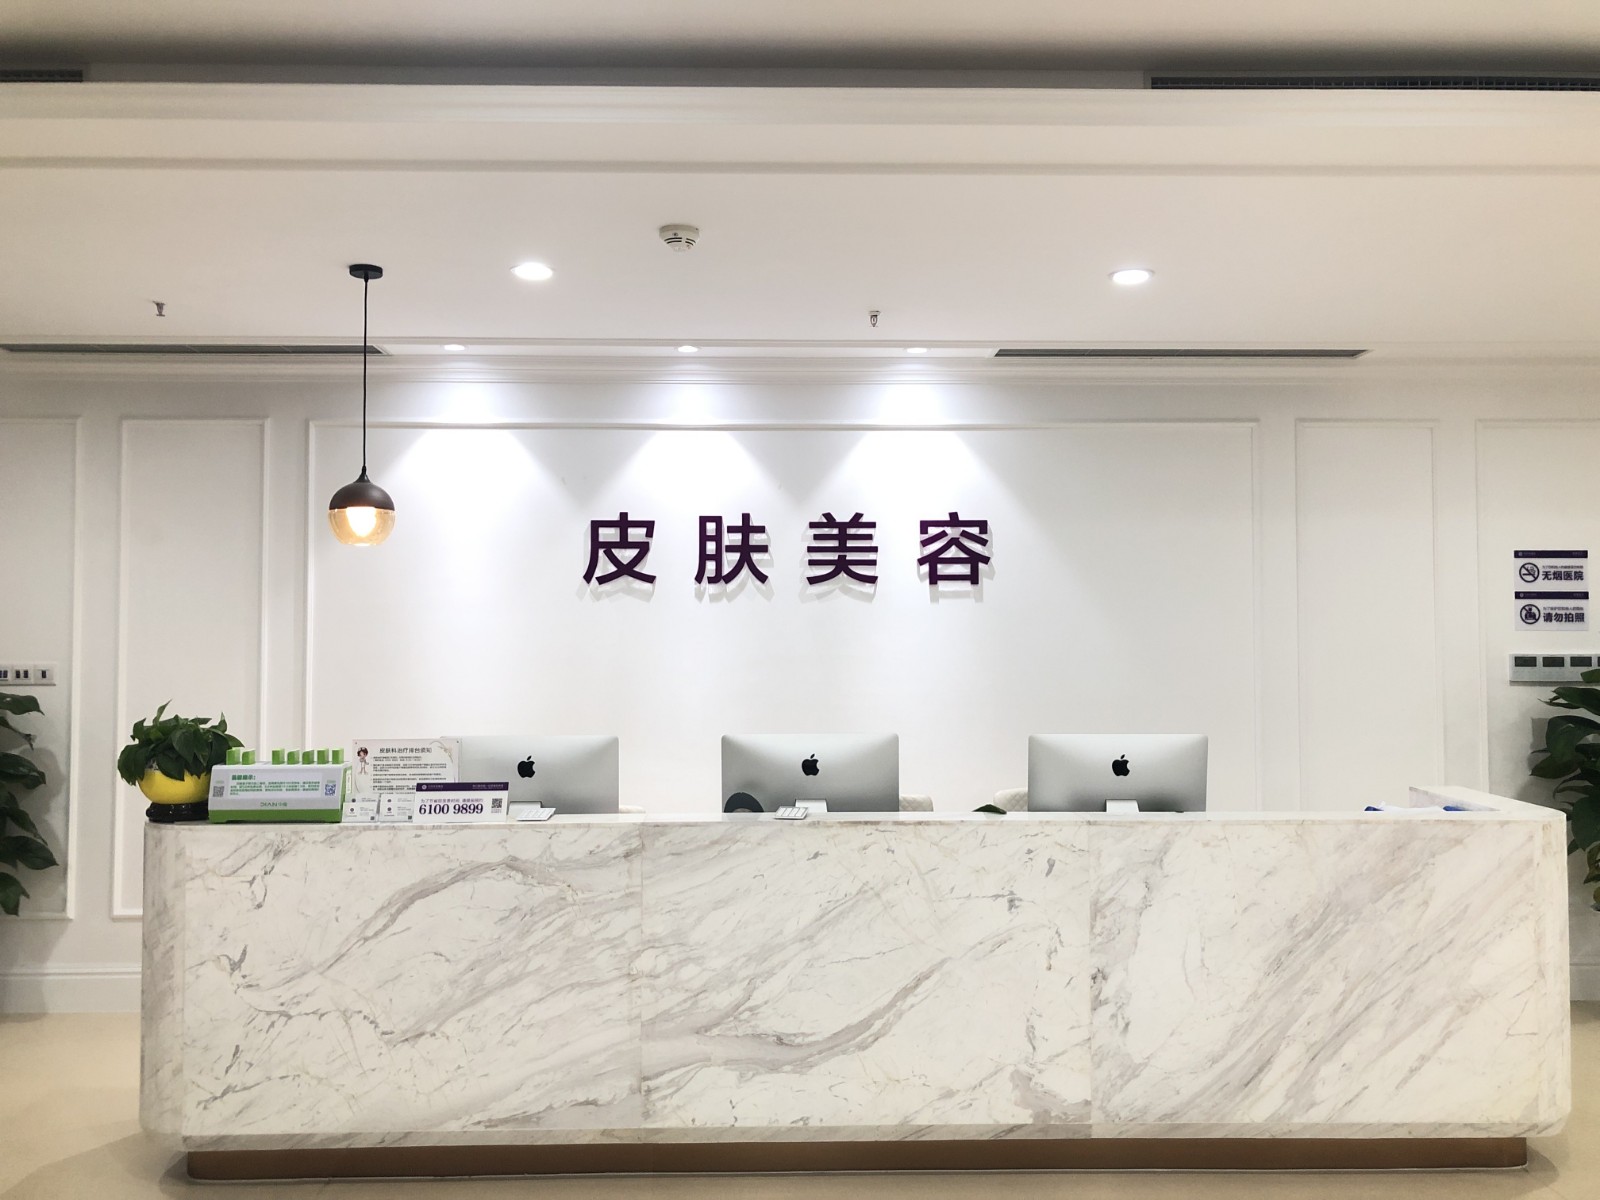 重庆万州华美紫馨整形美容医院皮肤美容中心